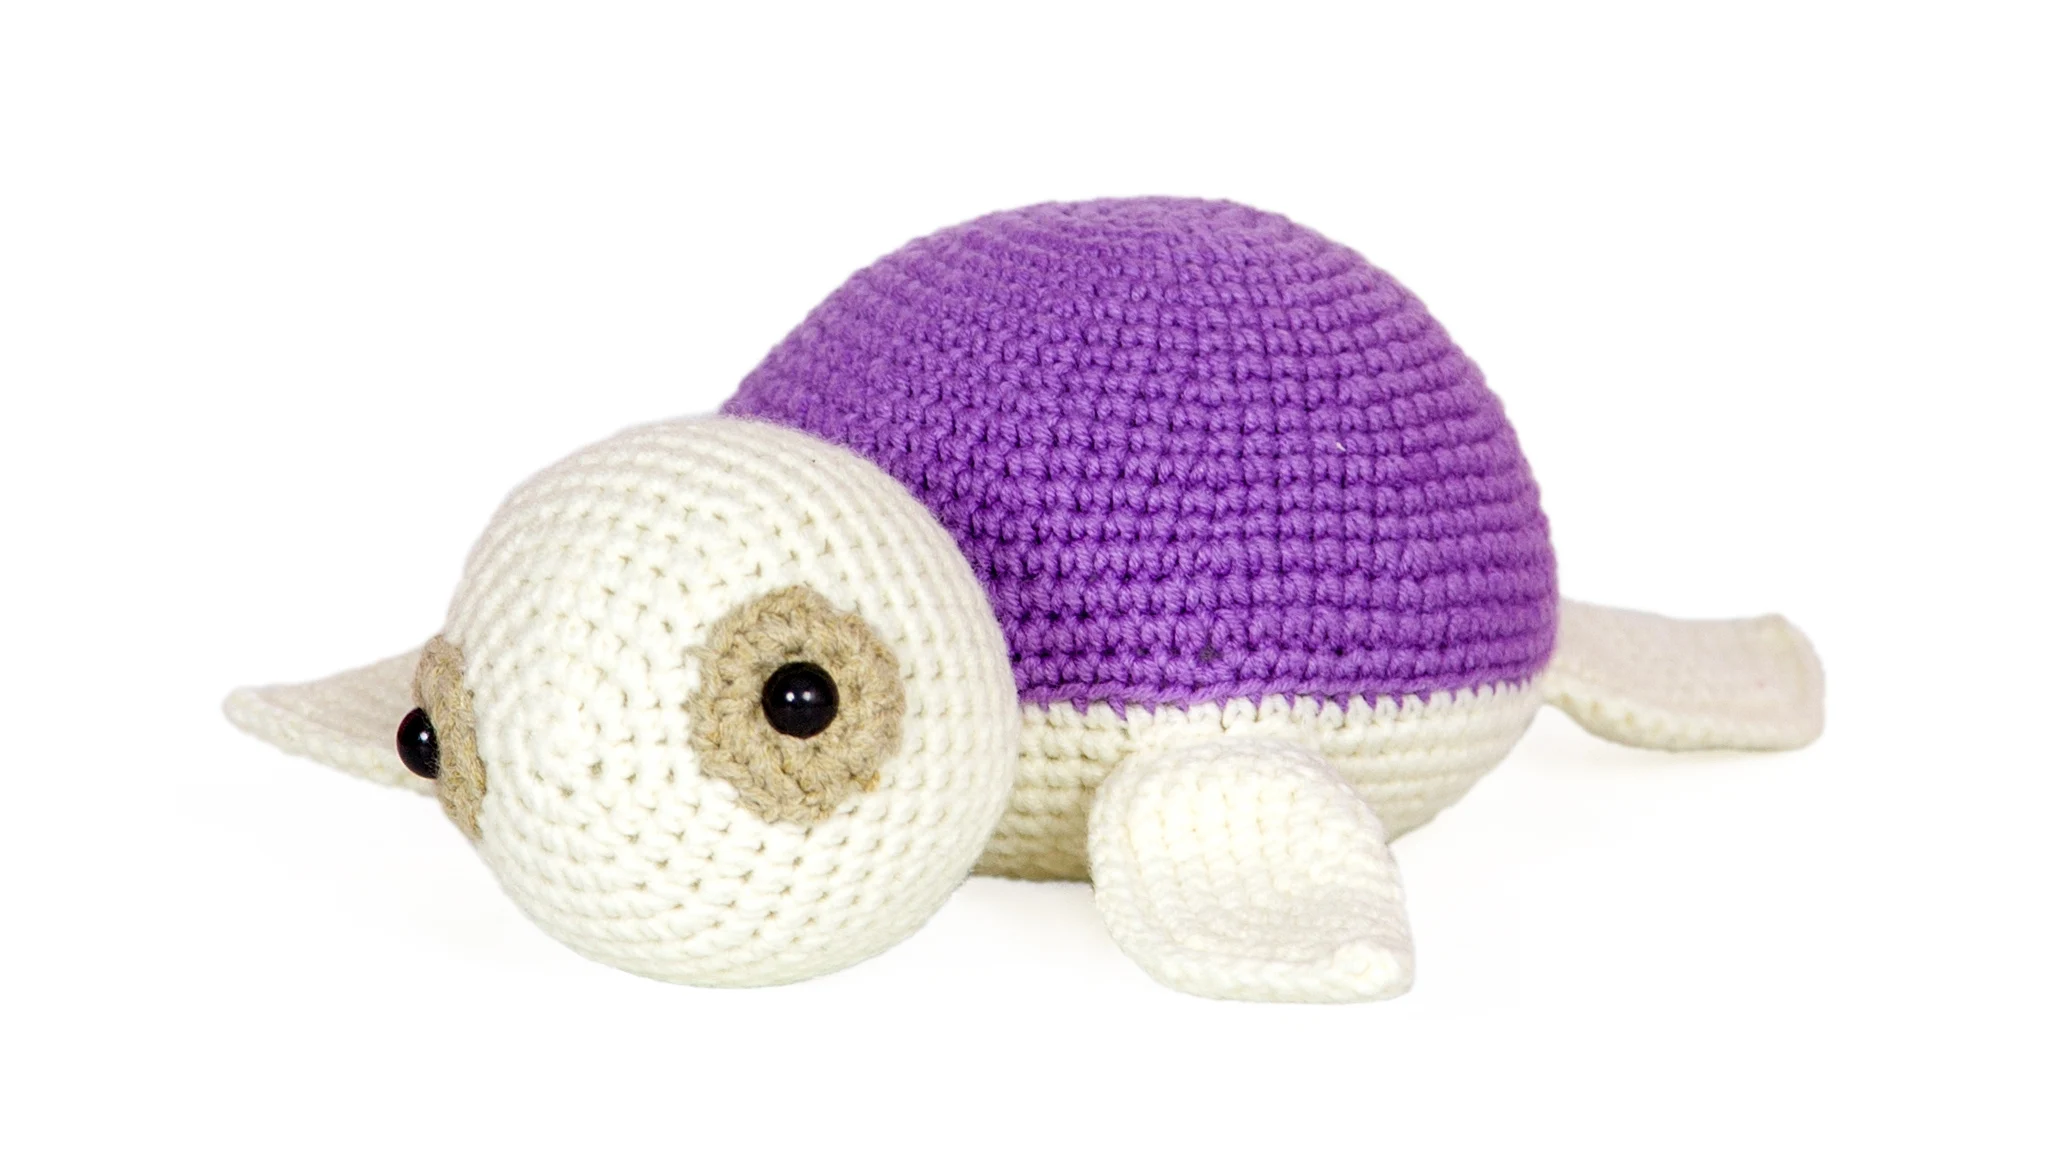 Тедди фиолетовая Черепаха 7 дюймов ручной работы Amigurumi волоконная мягкая милая игрушка вязаная крючком кукла, Высококачественная хлопчатоб... от AliExpress WW